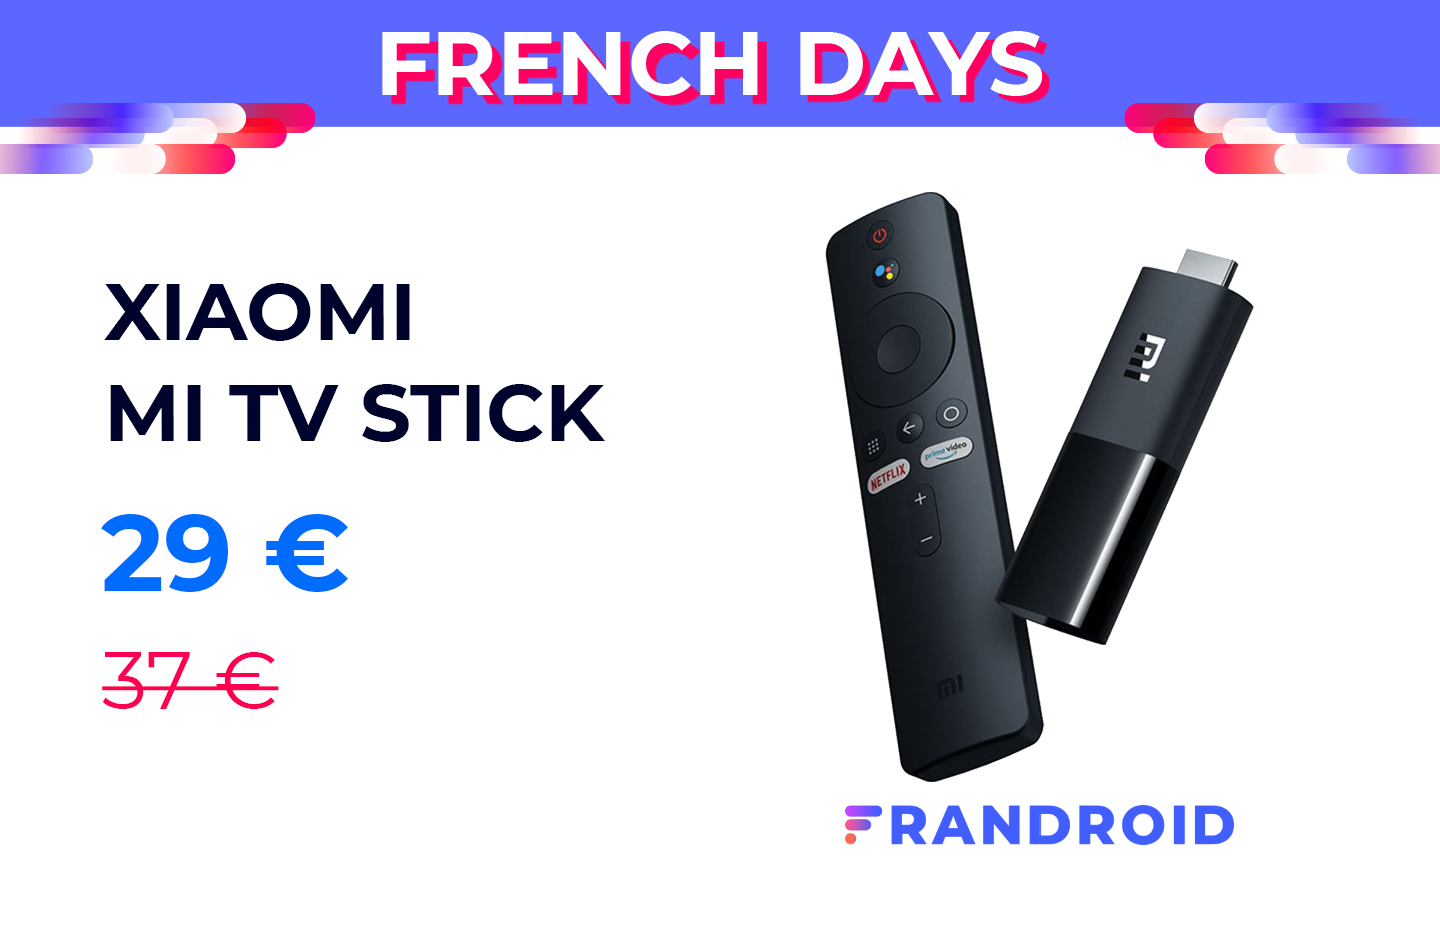 Le Xiaomi Mi TV Stick est à moins de 30 euros pour les French Days